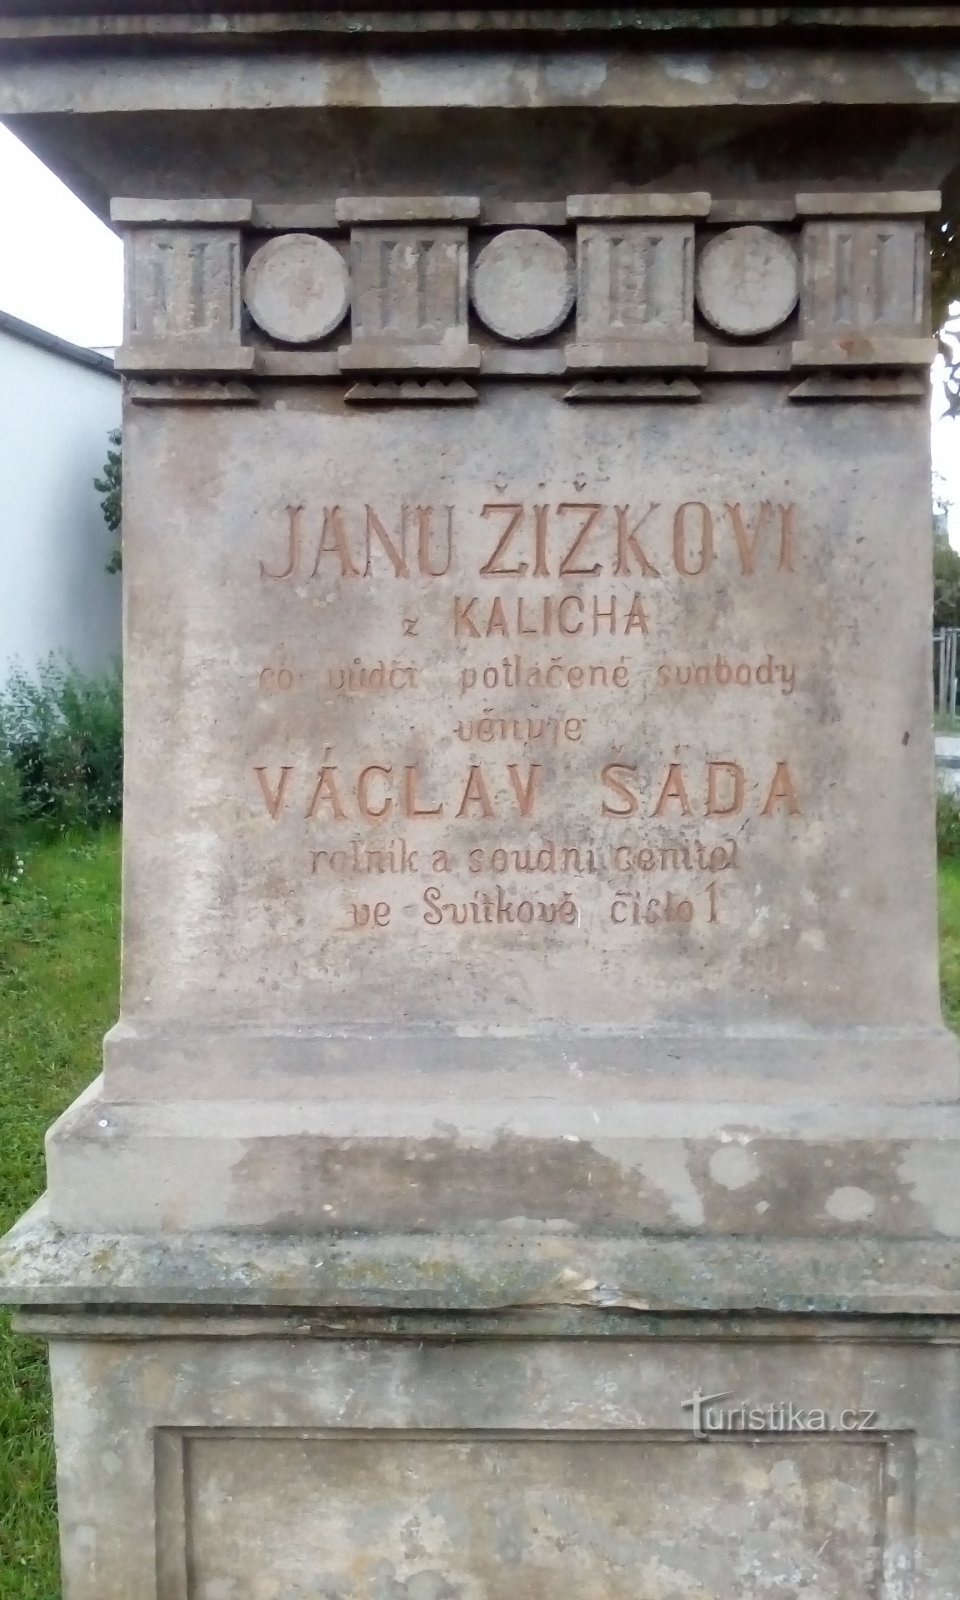 Monument to Jan Žižek in Svítkov